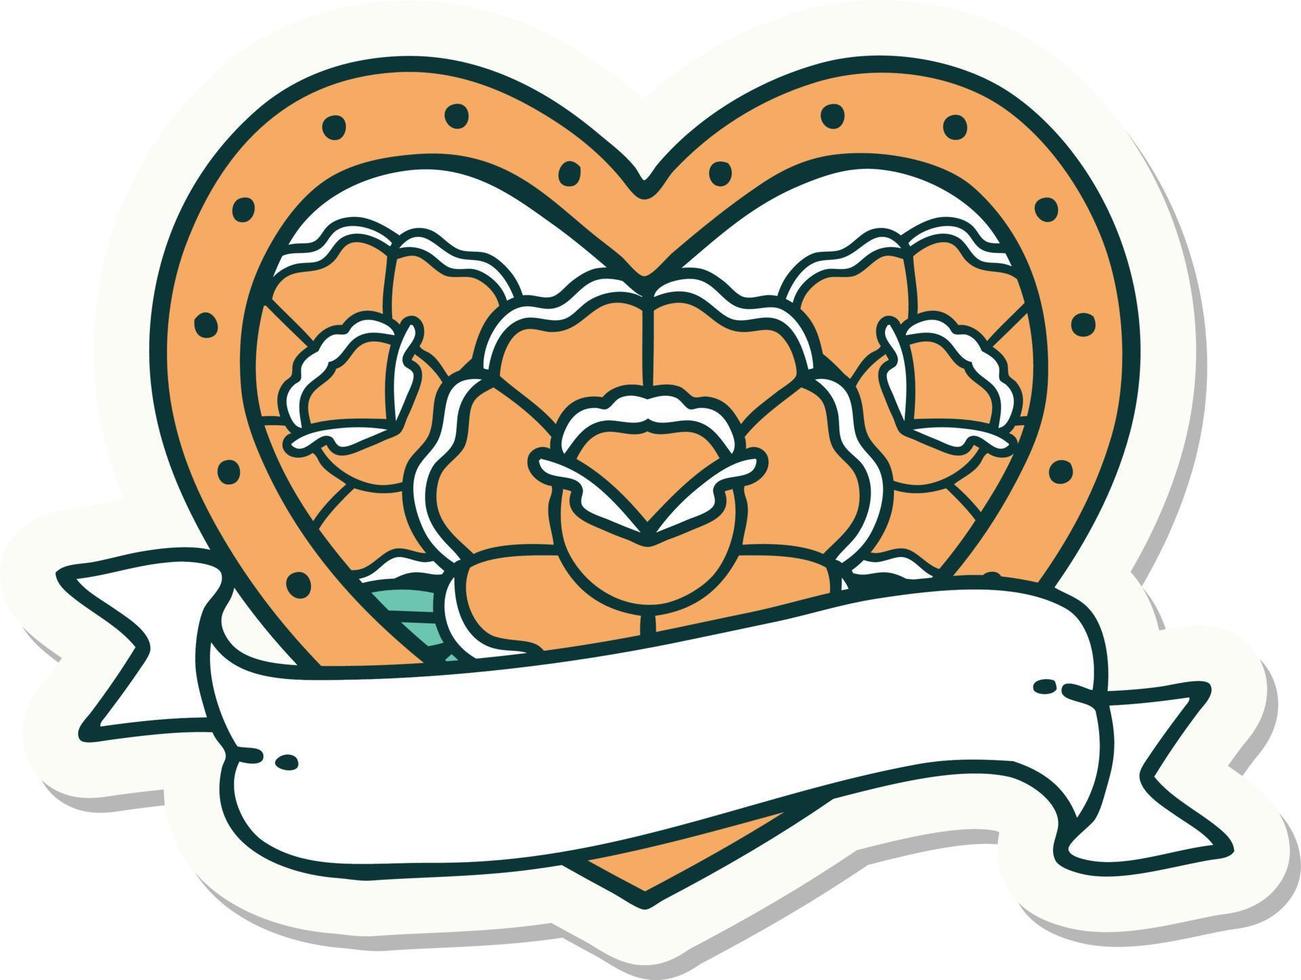 adesivo de tatuagem em estilo tradicional de um coração e banner com flores vetor